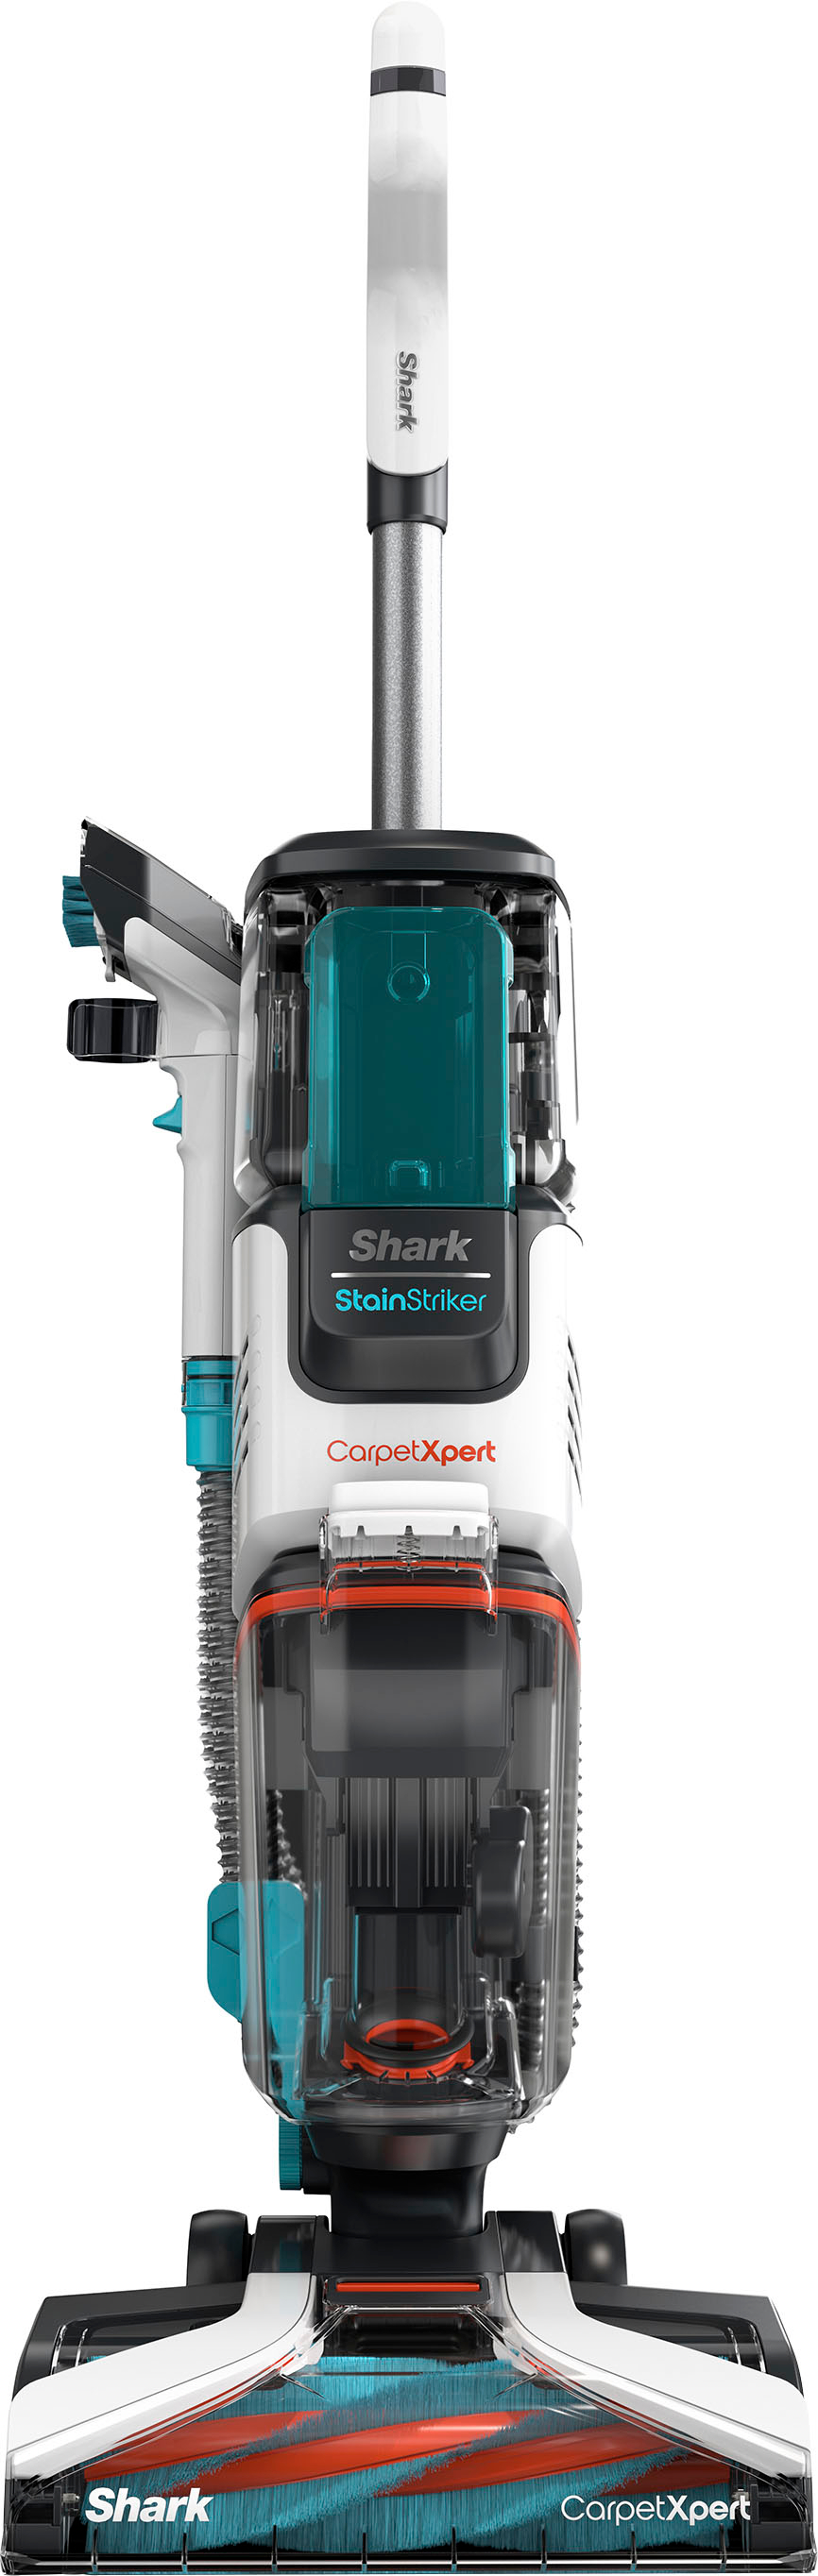 Shark CarpetXpert Deep Carpet Cleaner with StainStriker Technology